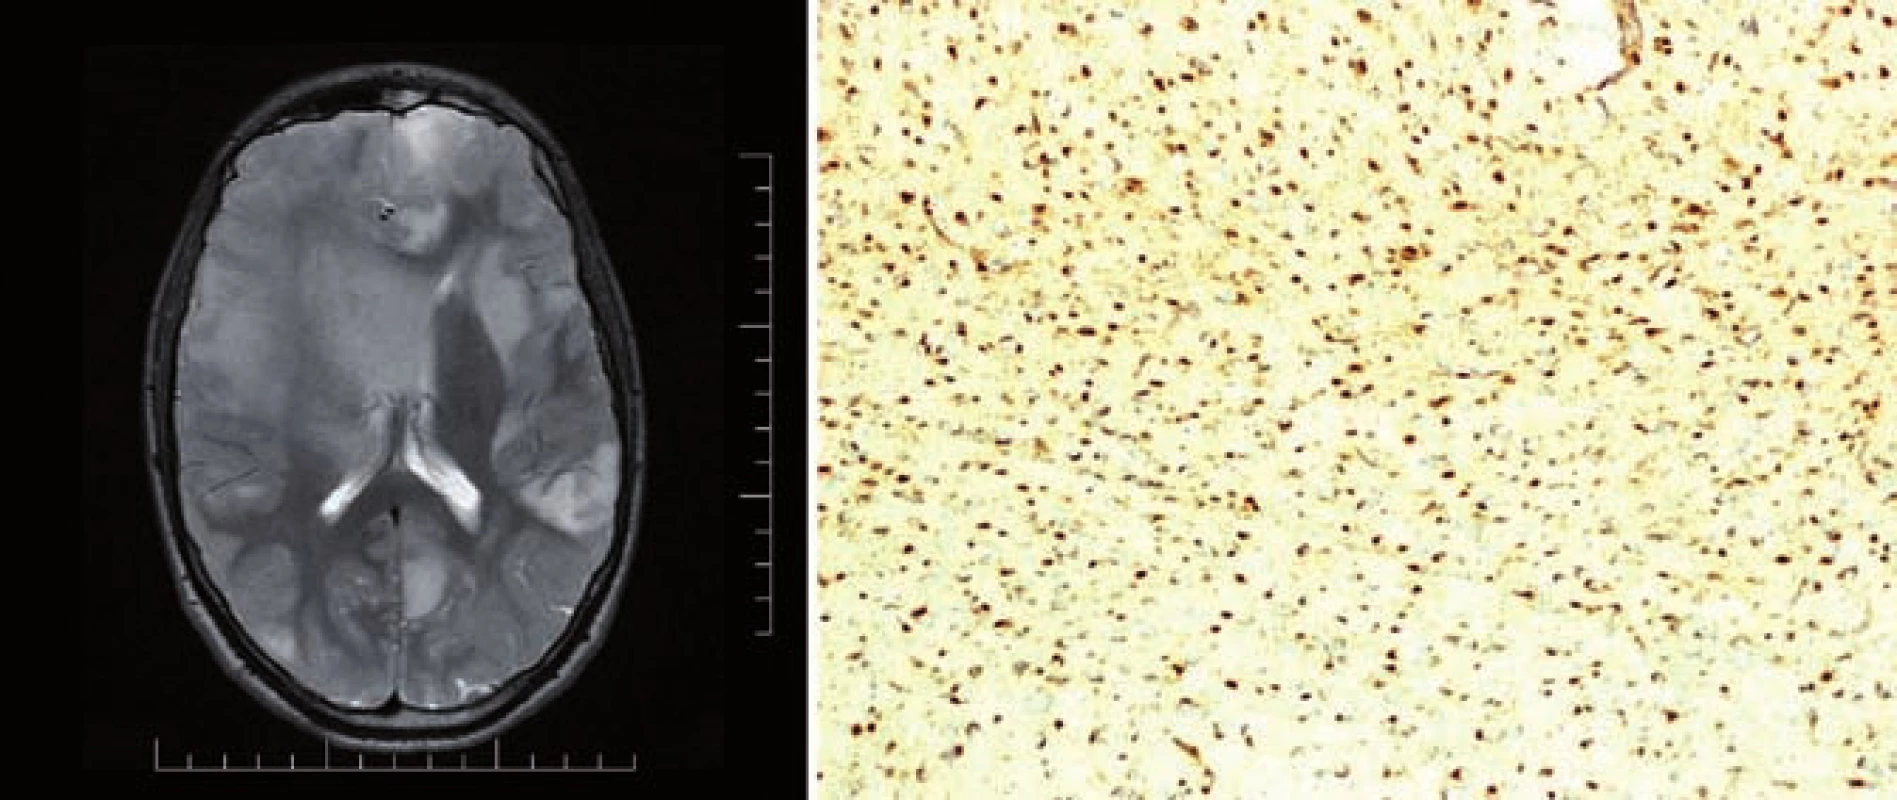 T2 vážený MR obraz pacienta s Ollierovou chorobou, nalezeny vícečetné difuzní astrocytomy mozku (A) a imunohistochemický průkaz mutace &lt;i&gt;IDH1&lt;/i&gt; R132H, 100% pozitivita (B).
Fig. 1. T2-weighted MR image of a patient with the Ollier disease, multiple diffuse astrocytomas of the brain found (A) and immunohistochemical evidence of the &lt;i&gt;IDH1&lt;/i&gt; R132H mutation, 100% positivity (B).